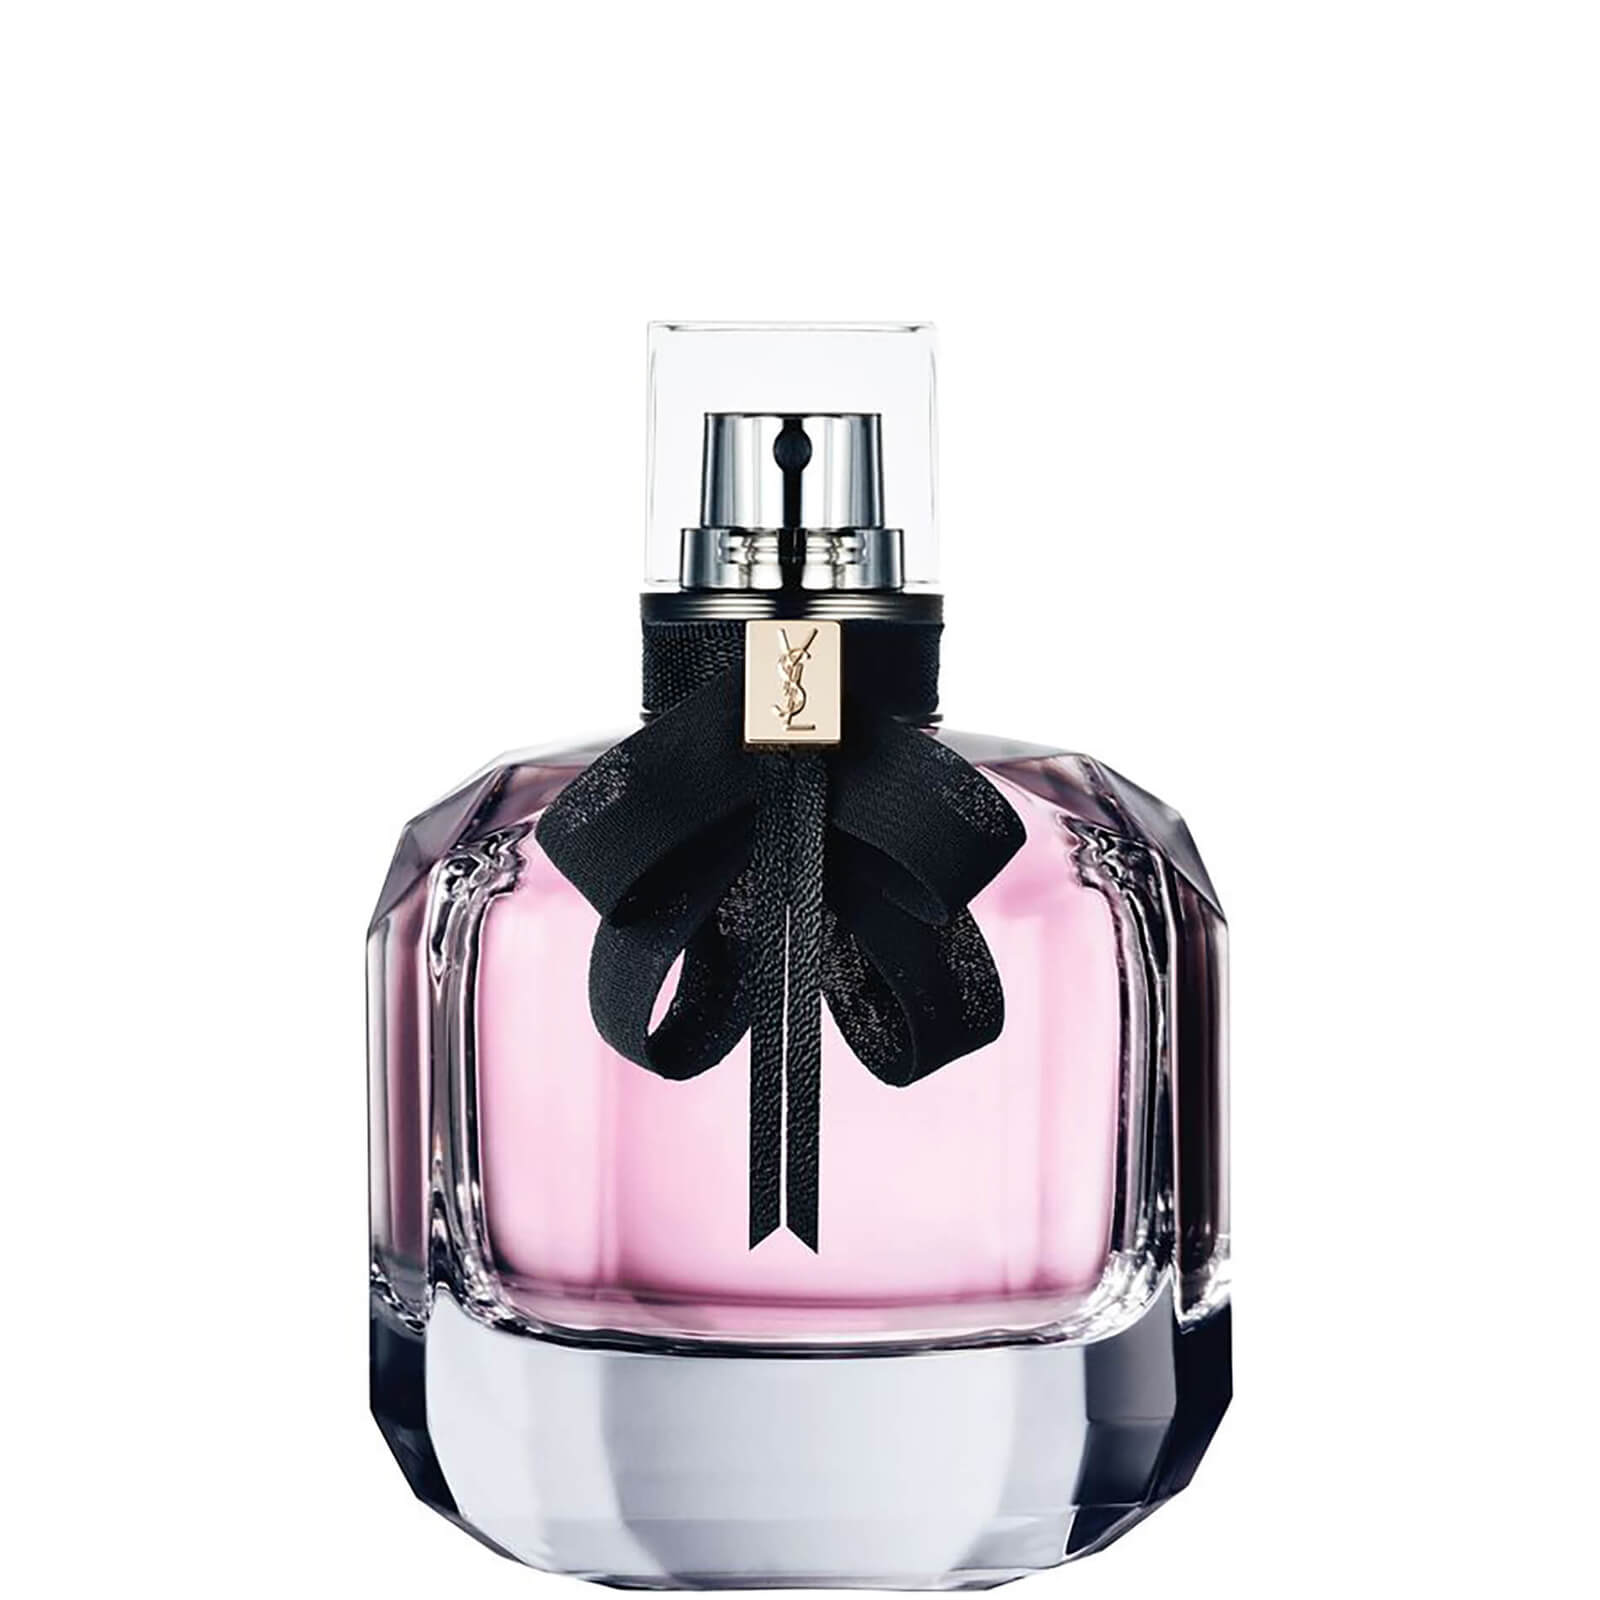 Image of Eau de Parfum Profumo Mon Paris Yves Saint Laurent 90 ml